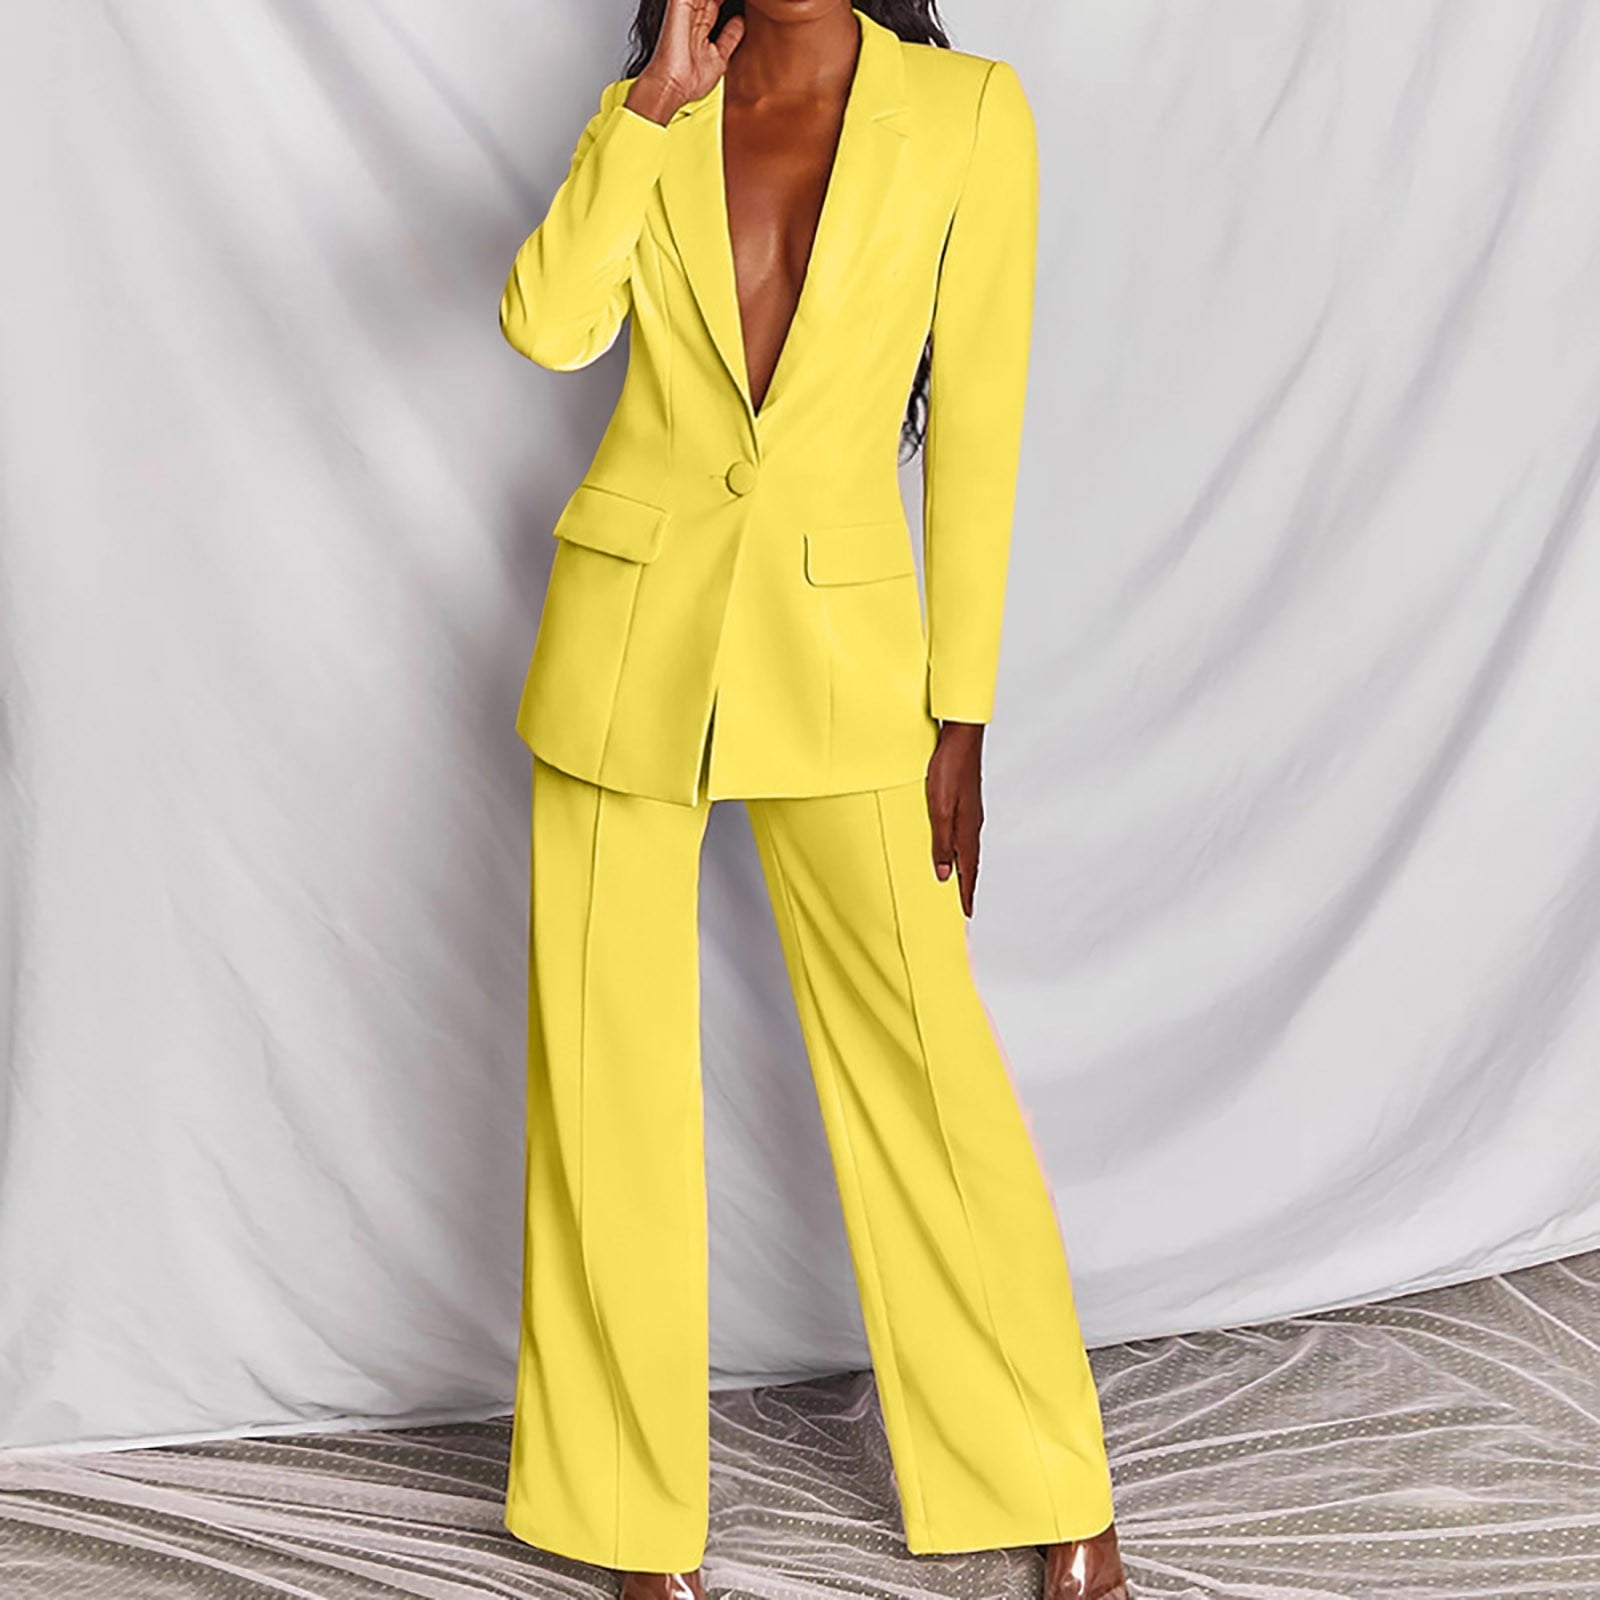 Women's Blazer Suit Long Sleeve Solid Suit Pants Casual Elegant Business  Button-down collar Buttons Suit Sets Two-piece Suit 